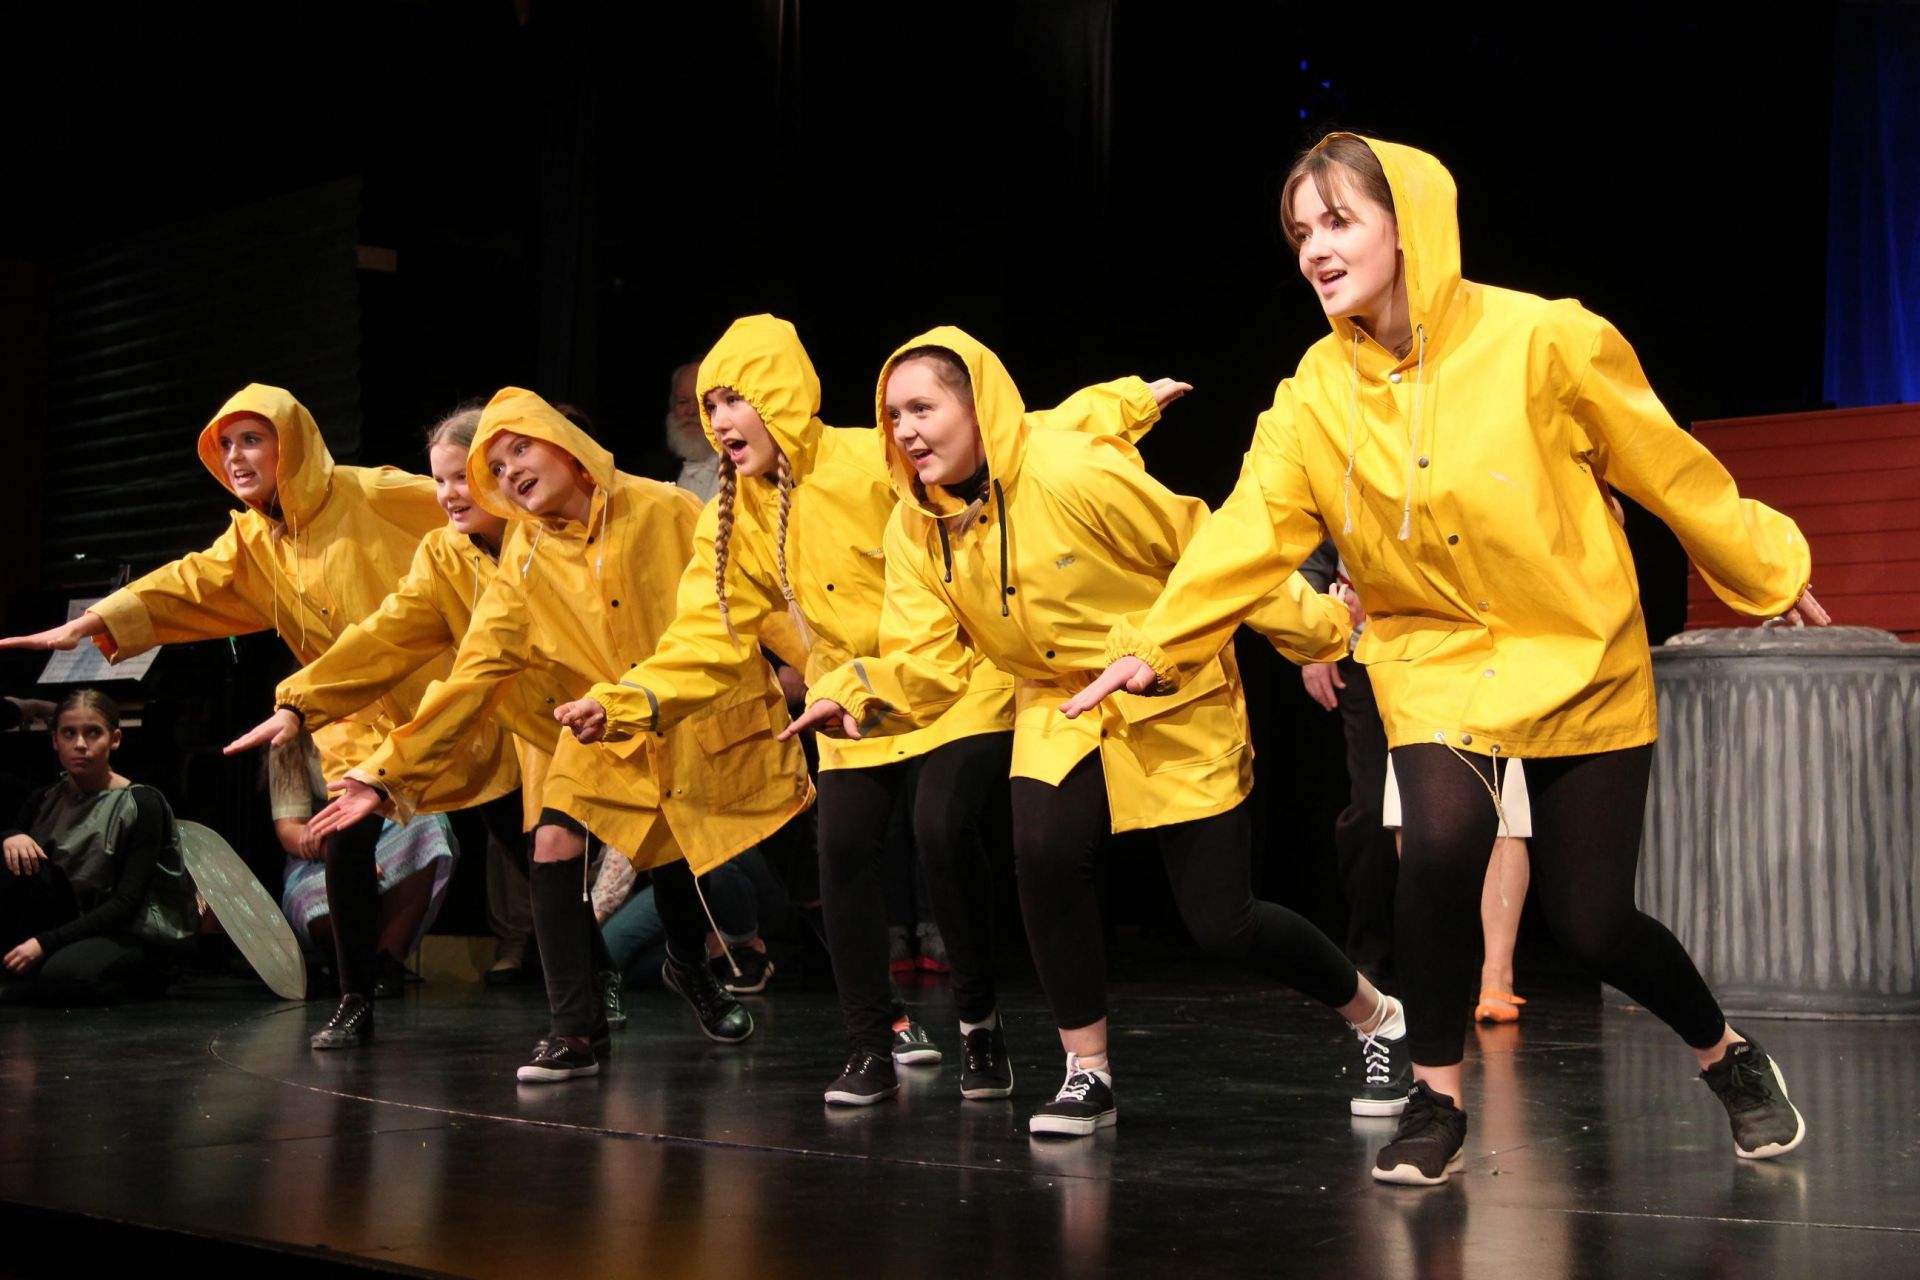 Ungdomar på rad på scenen. Alla klädda i gula regnrockar.